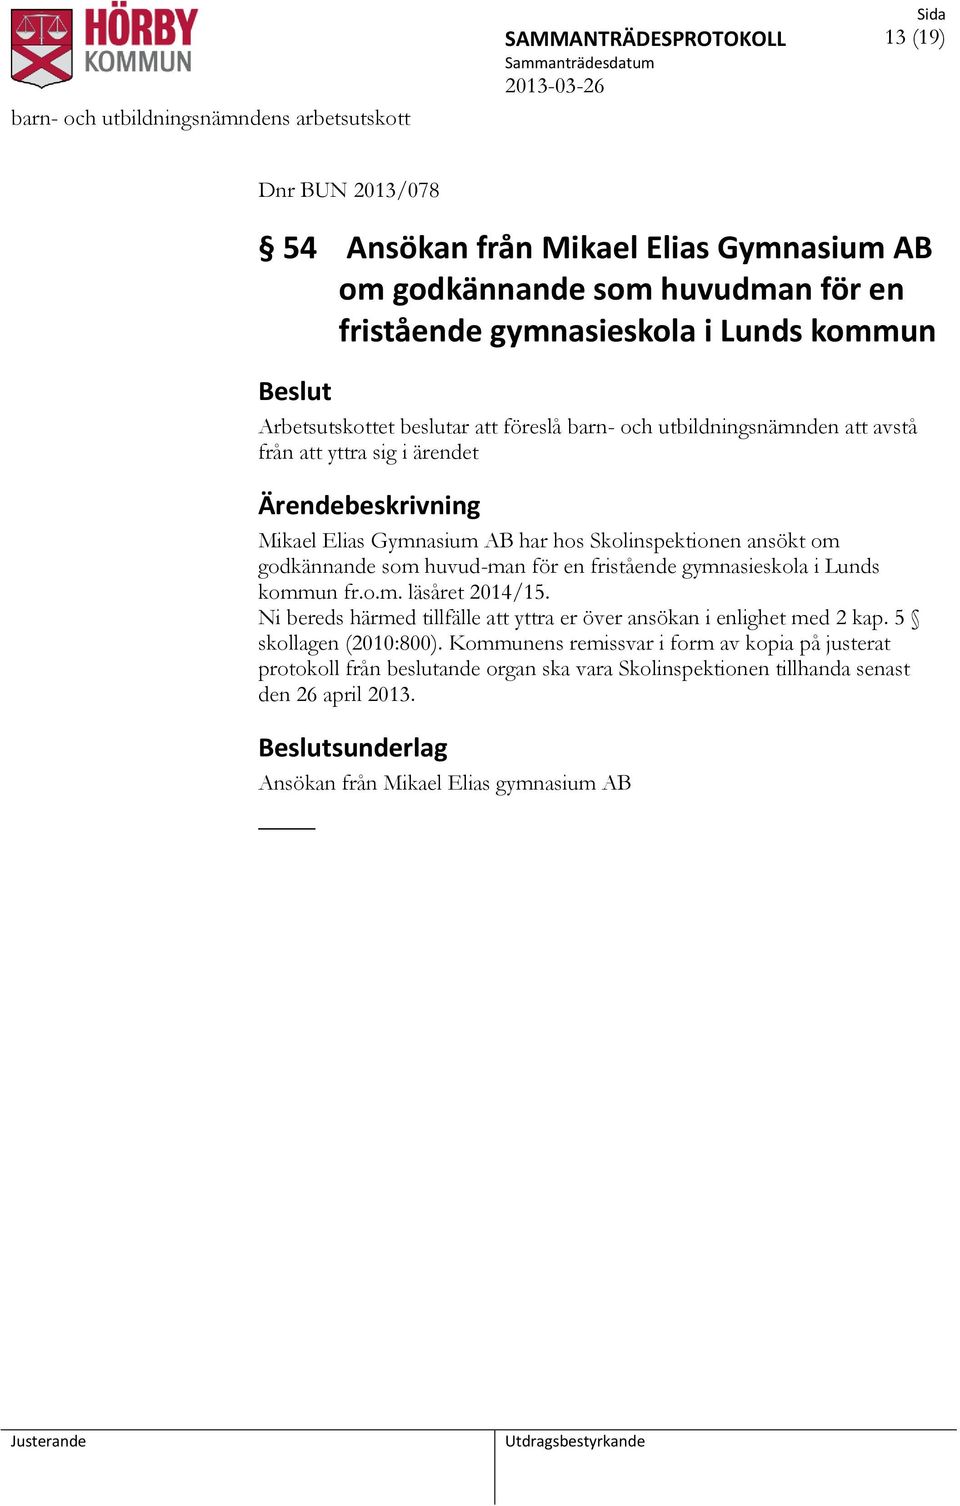 en fristående gymnasieskola i Lunds kommun fr.o.m. läsåret 2014/15. Ni bereds härmed tillfälle att yttra er över ansökan i enlighet med 2 kap. 5 skollagen (2010:800).